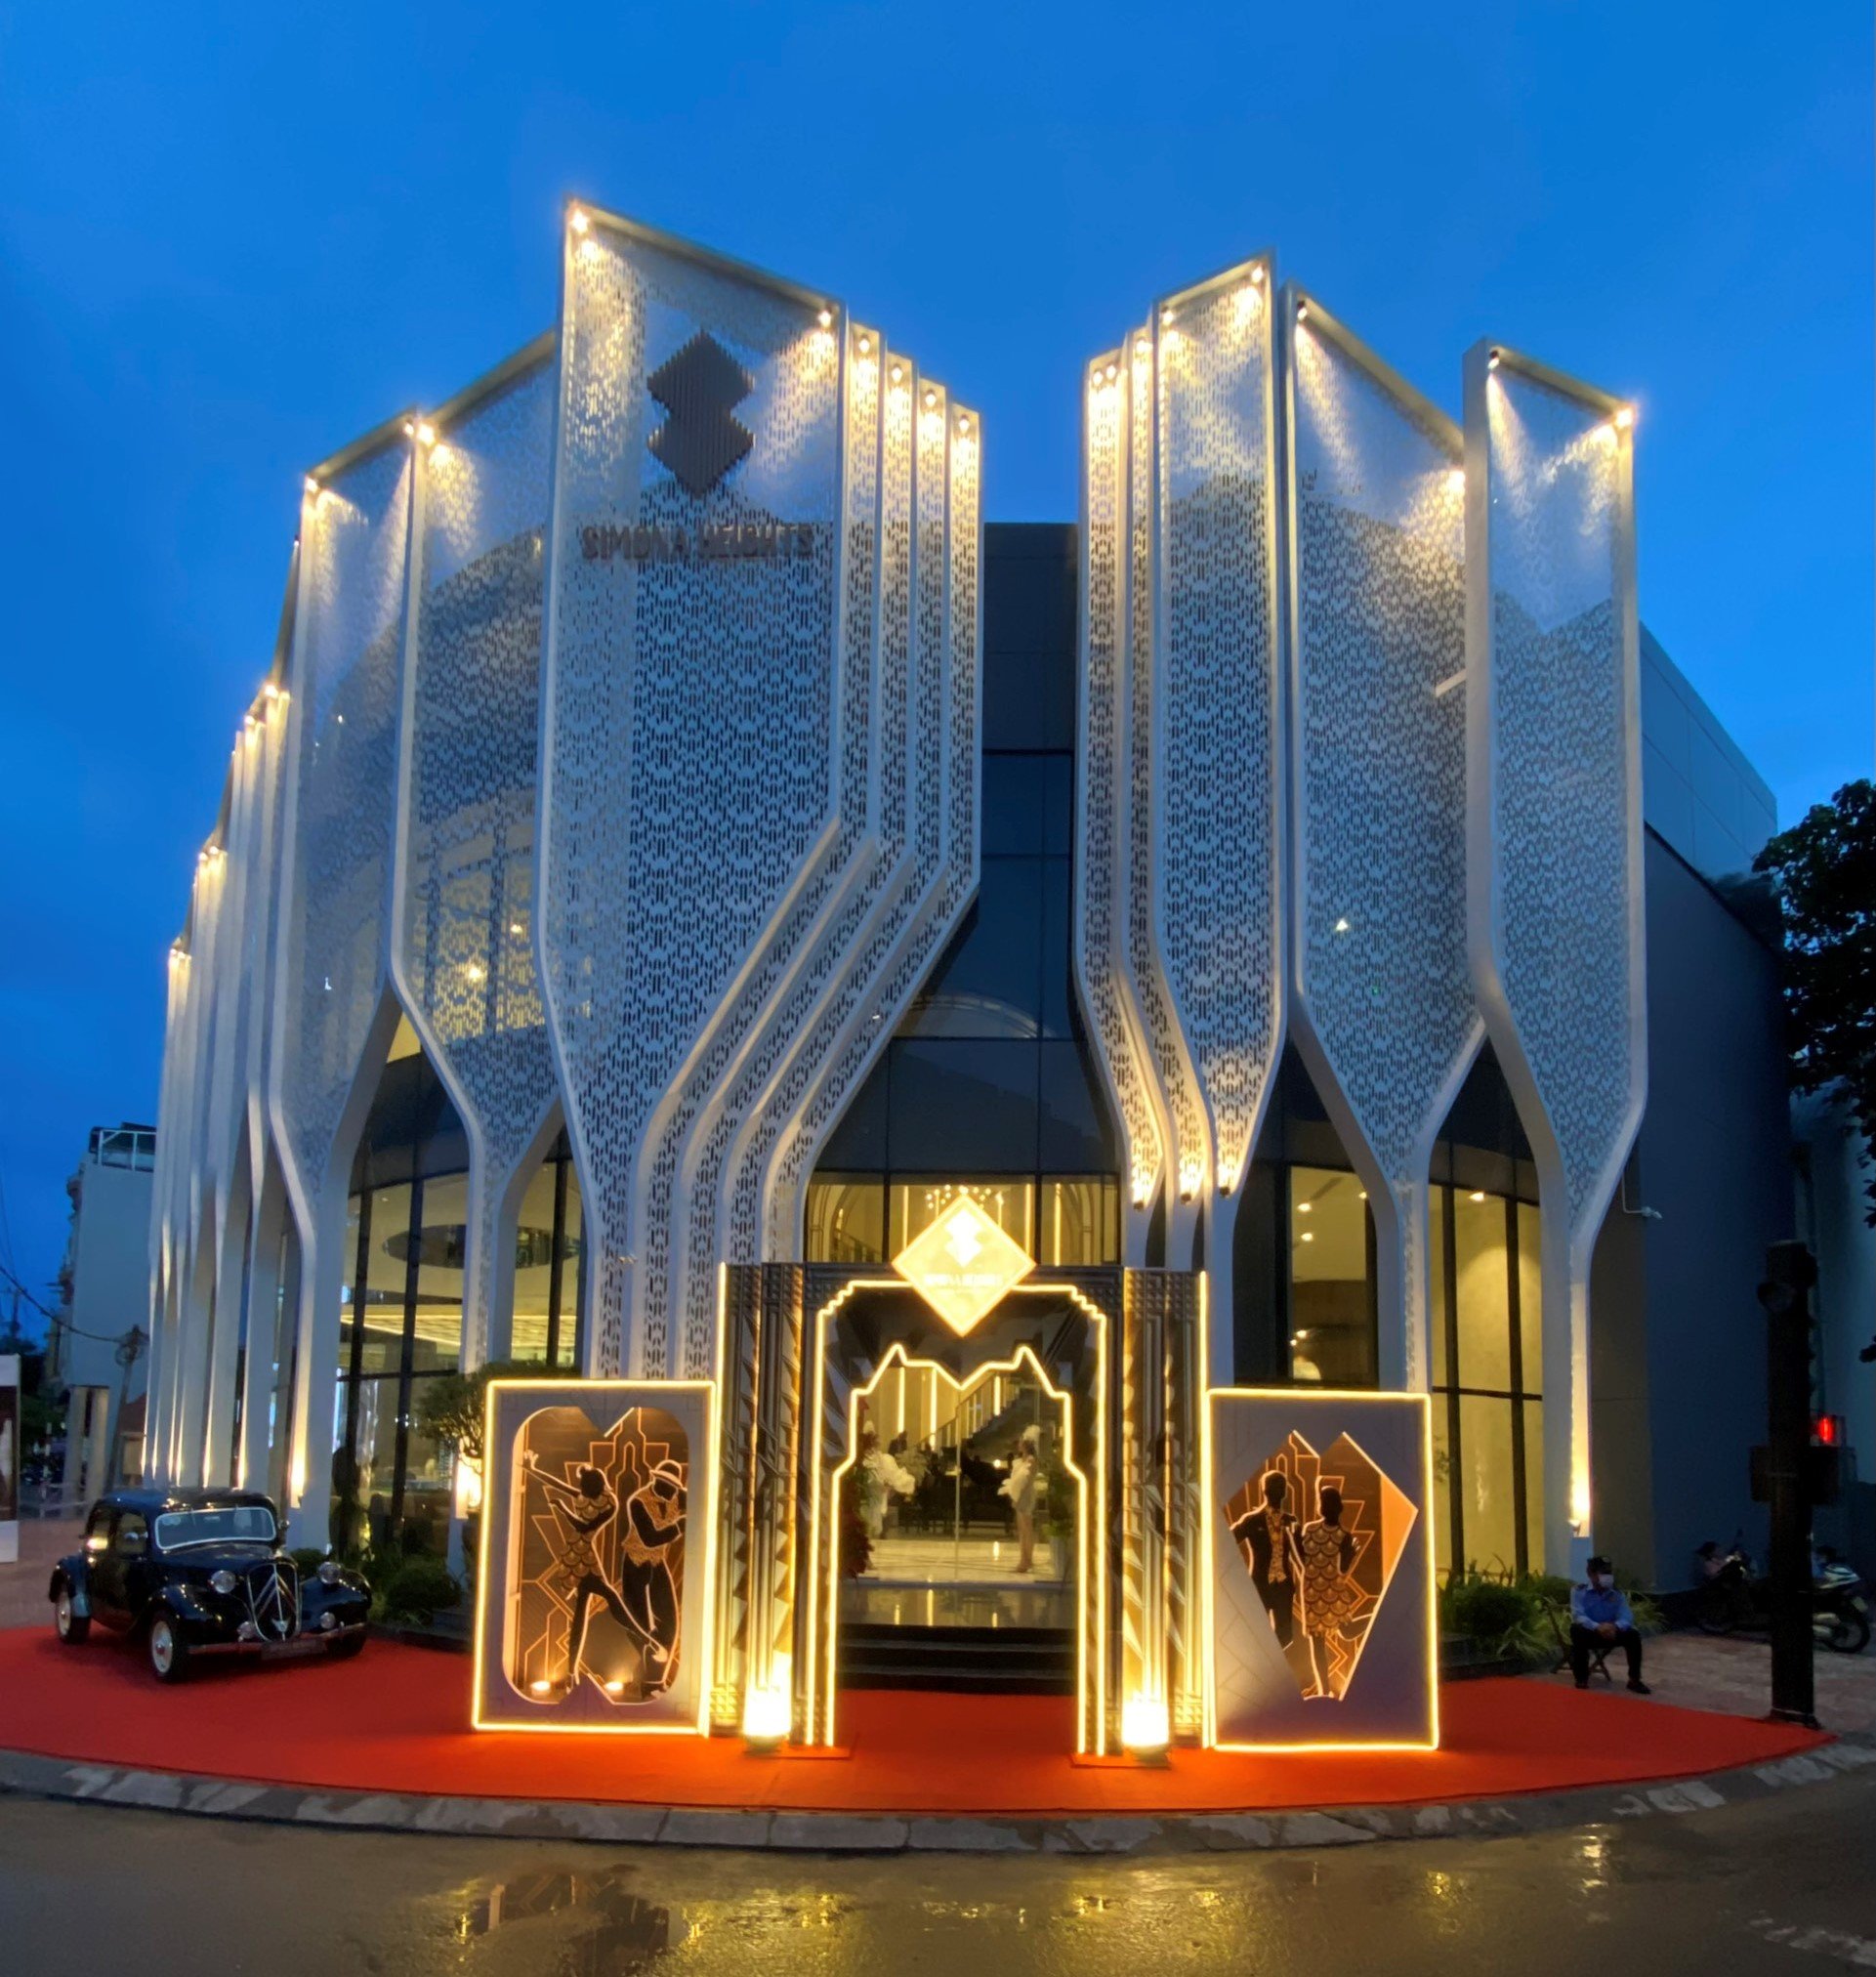 Simona Heights Sales Gallery tọa lạc tại địa chỉ 129 Trần Hưng Đạo, phường Lê Lợi, TP Quy Nhơn, Bình Định.